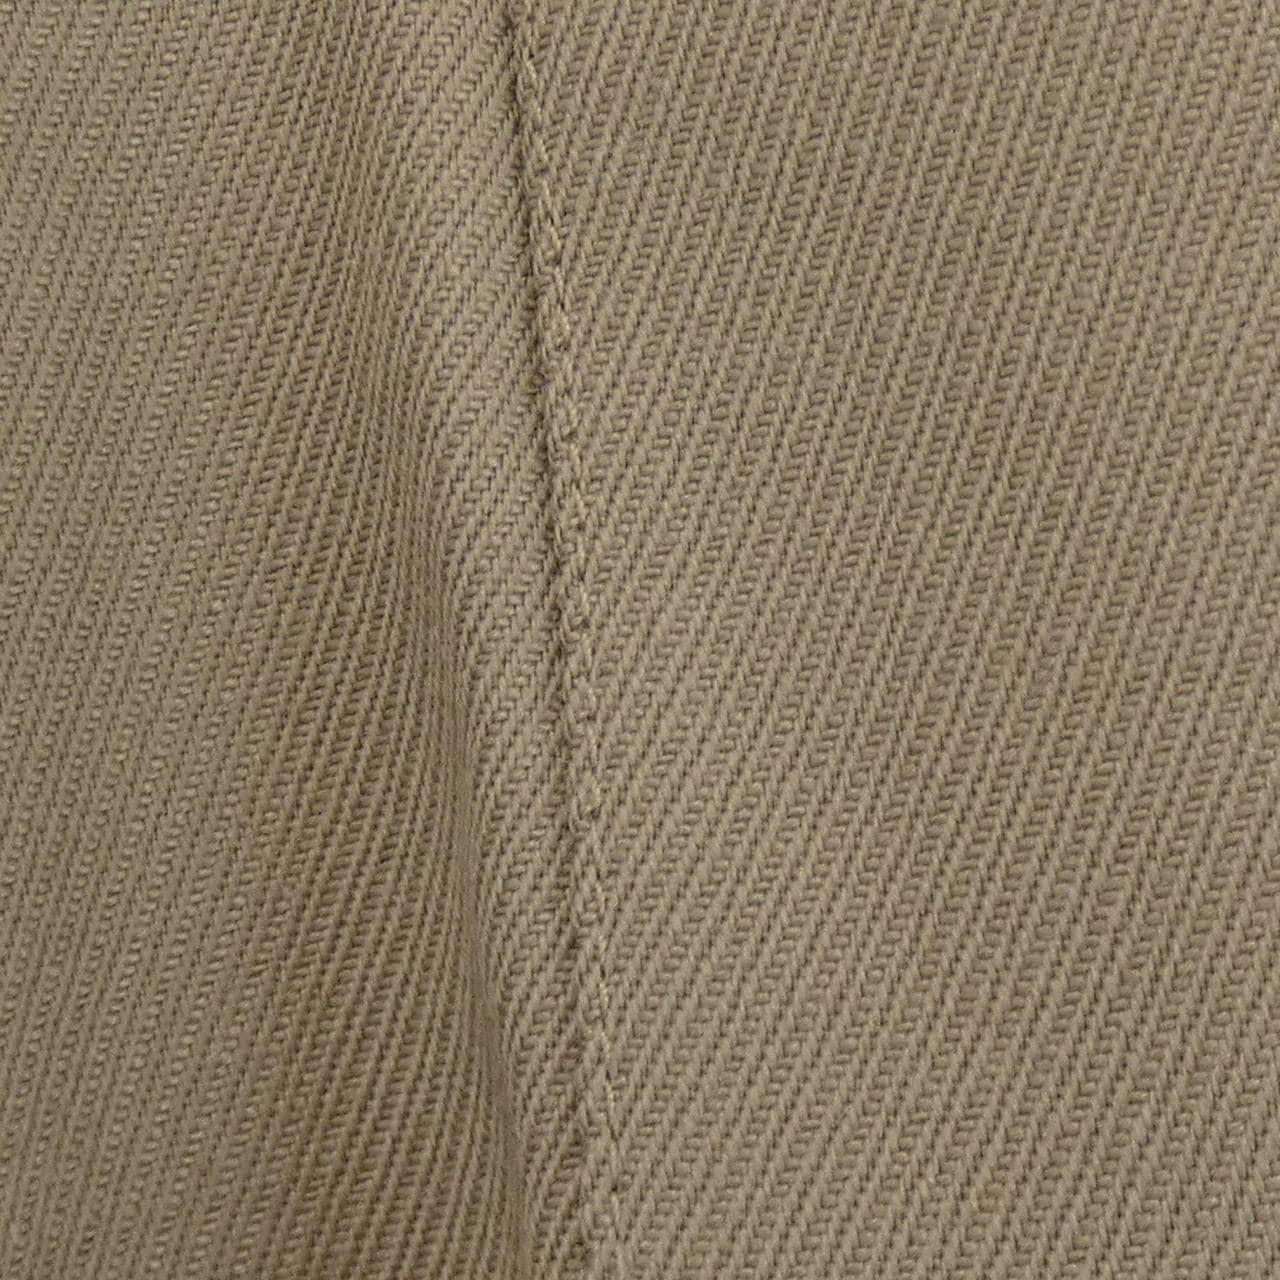 [vintage] CHANEL褲子